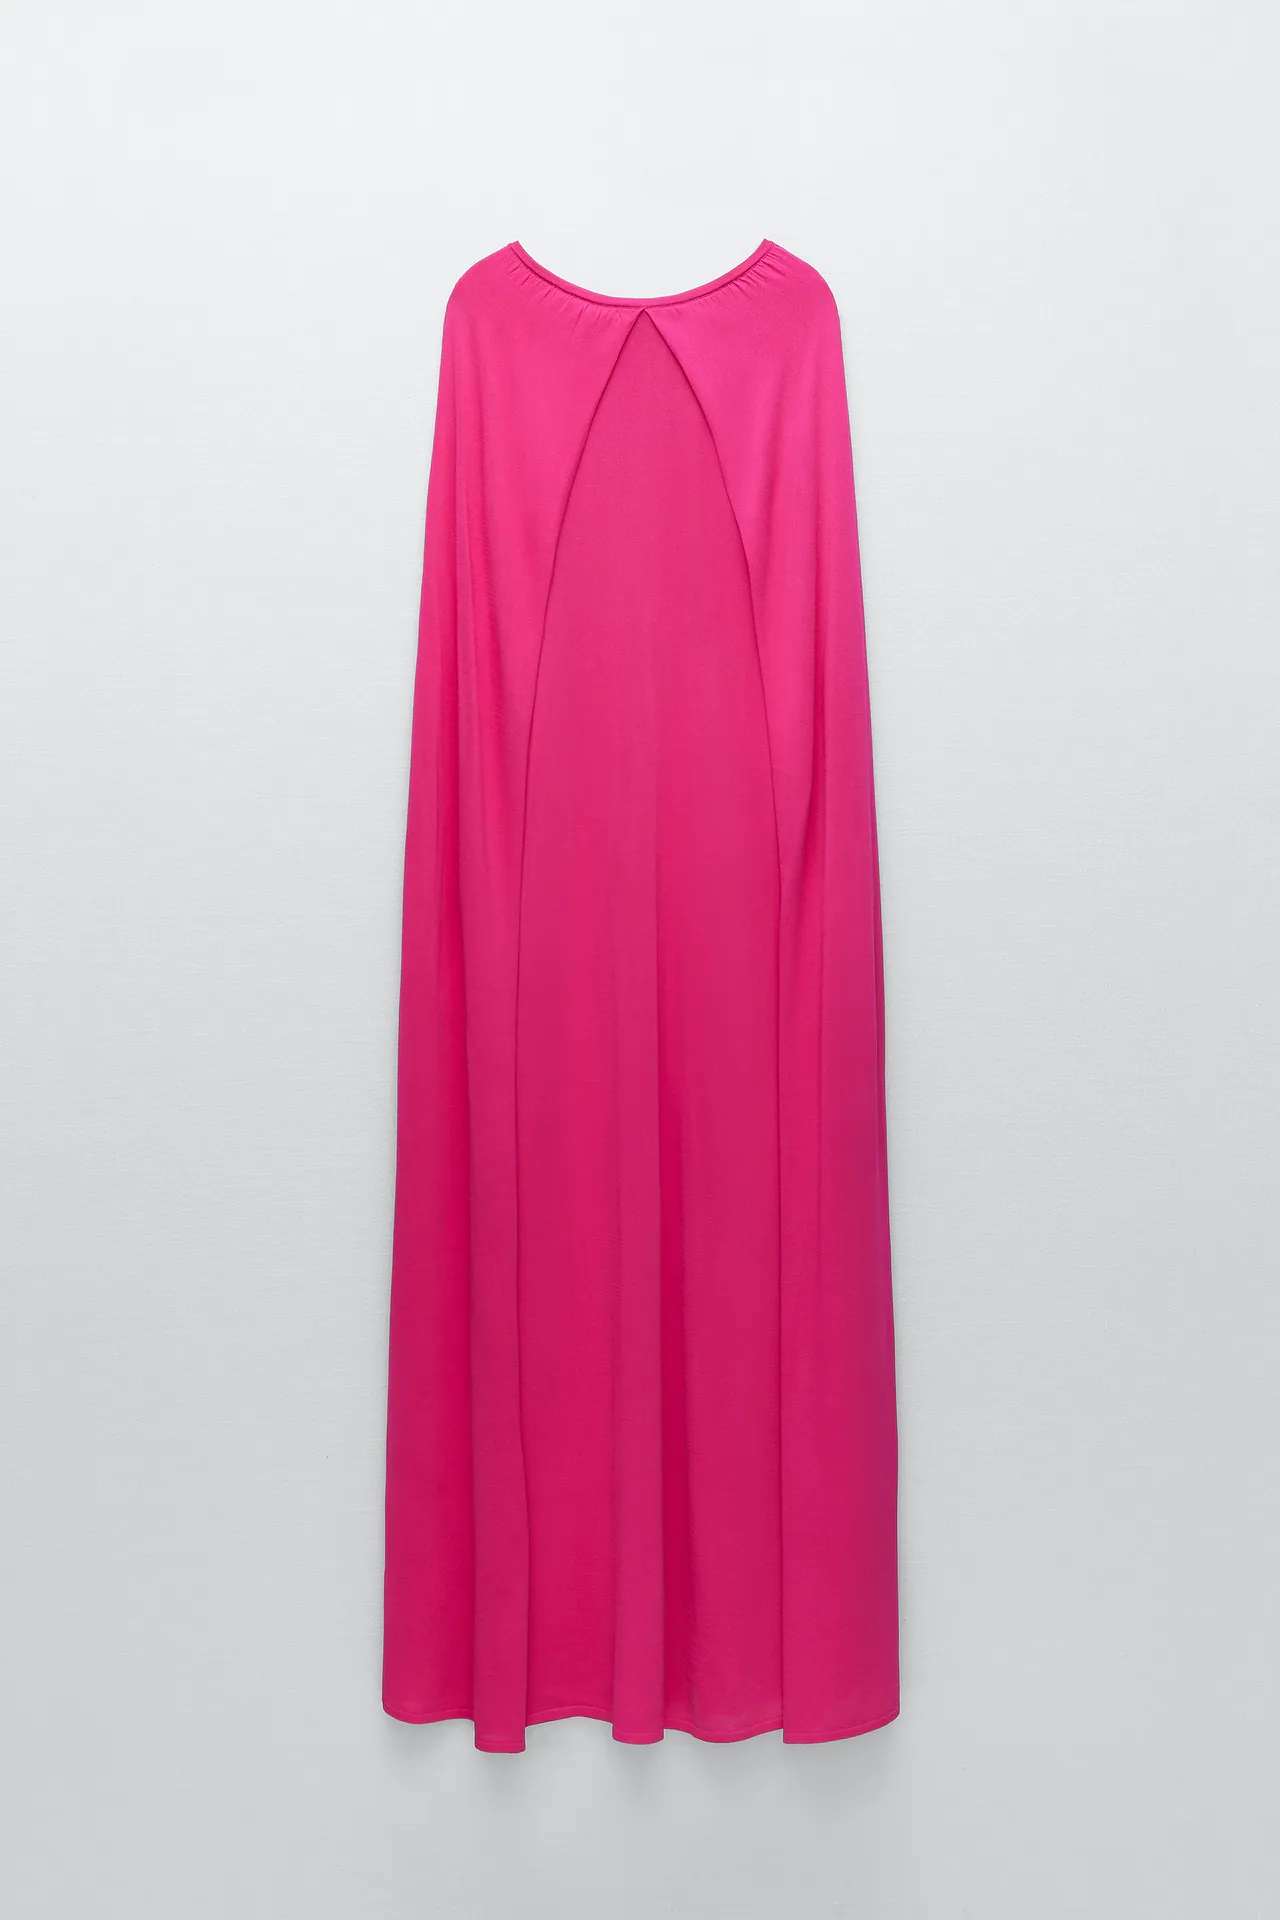 El vestido con capa de edición especial de Zara que te convertirá en la más elegante